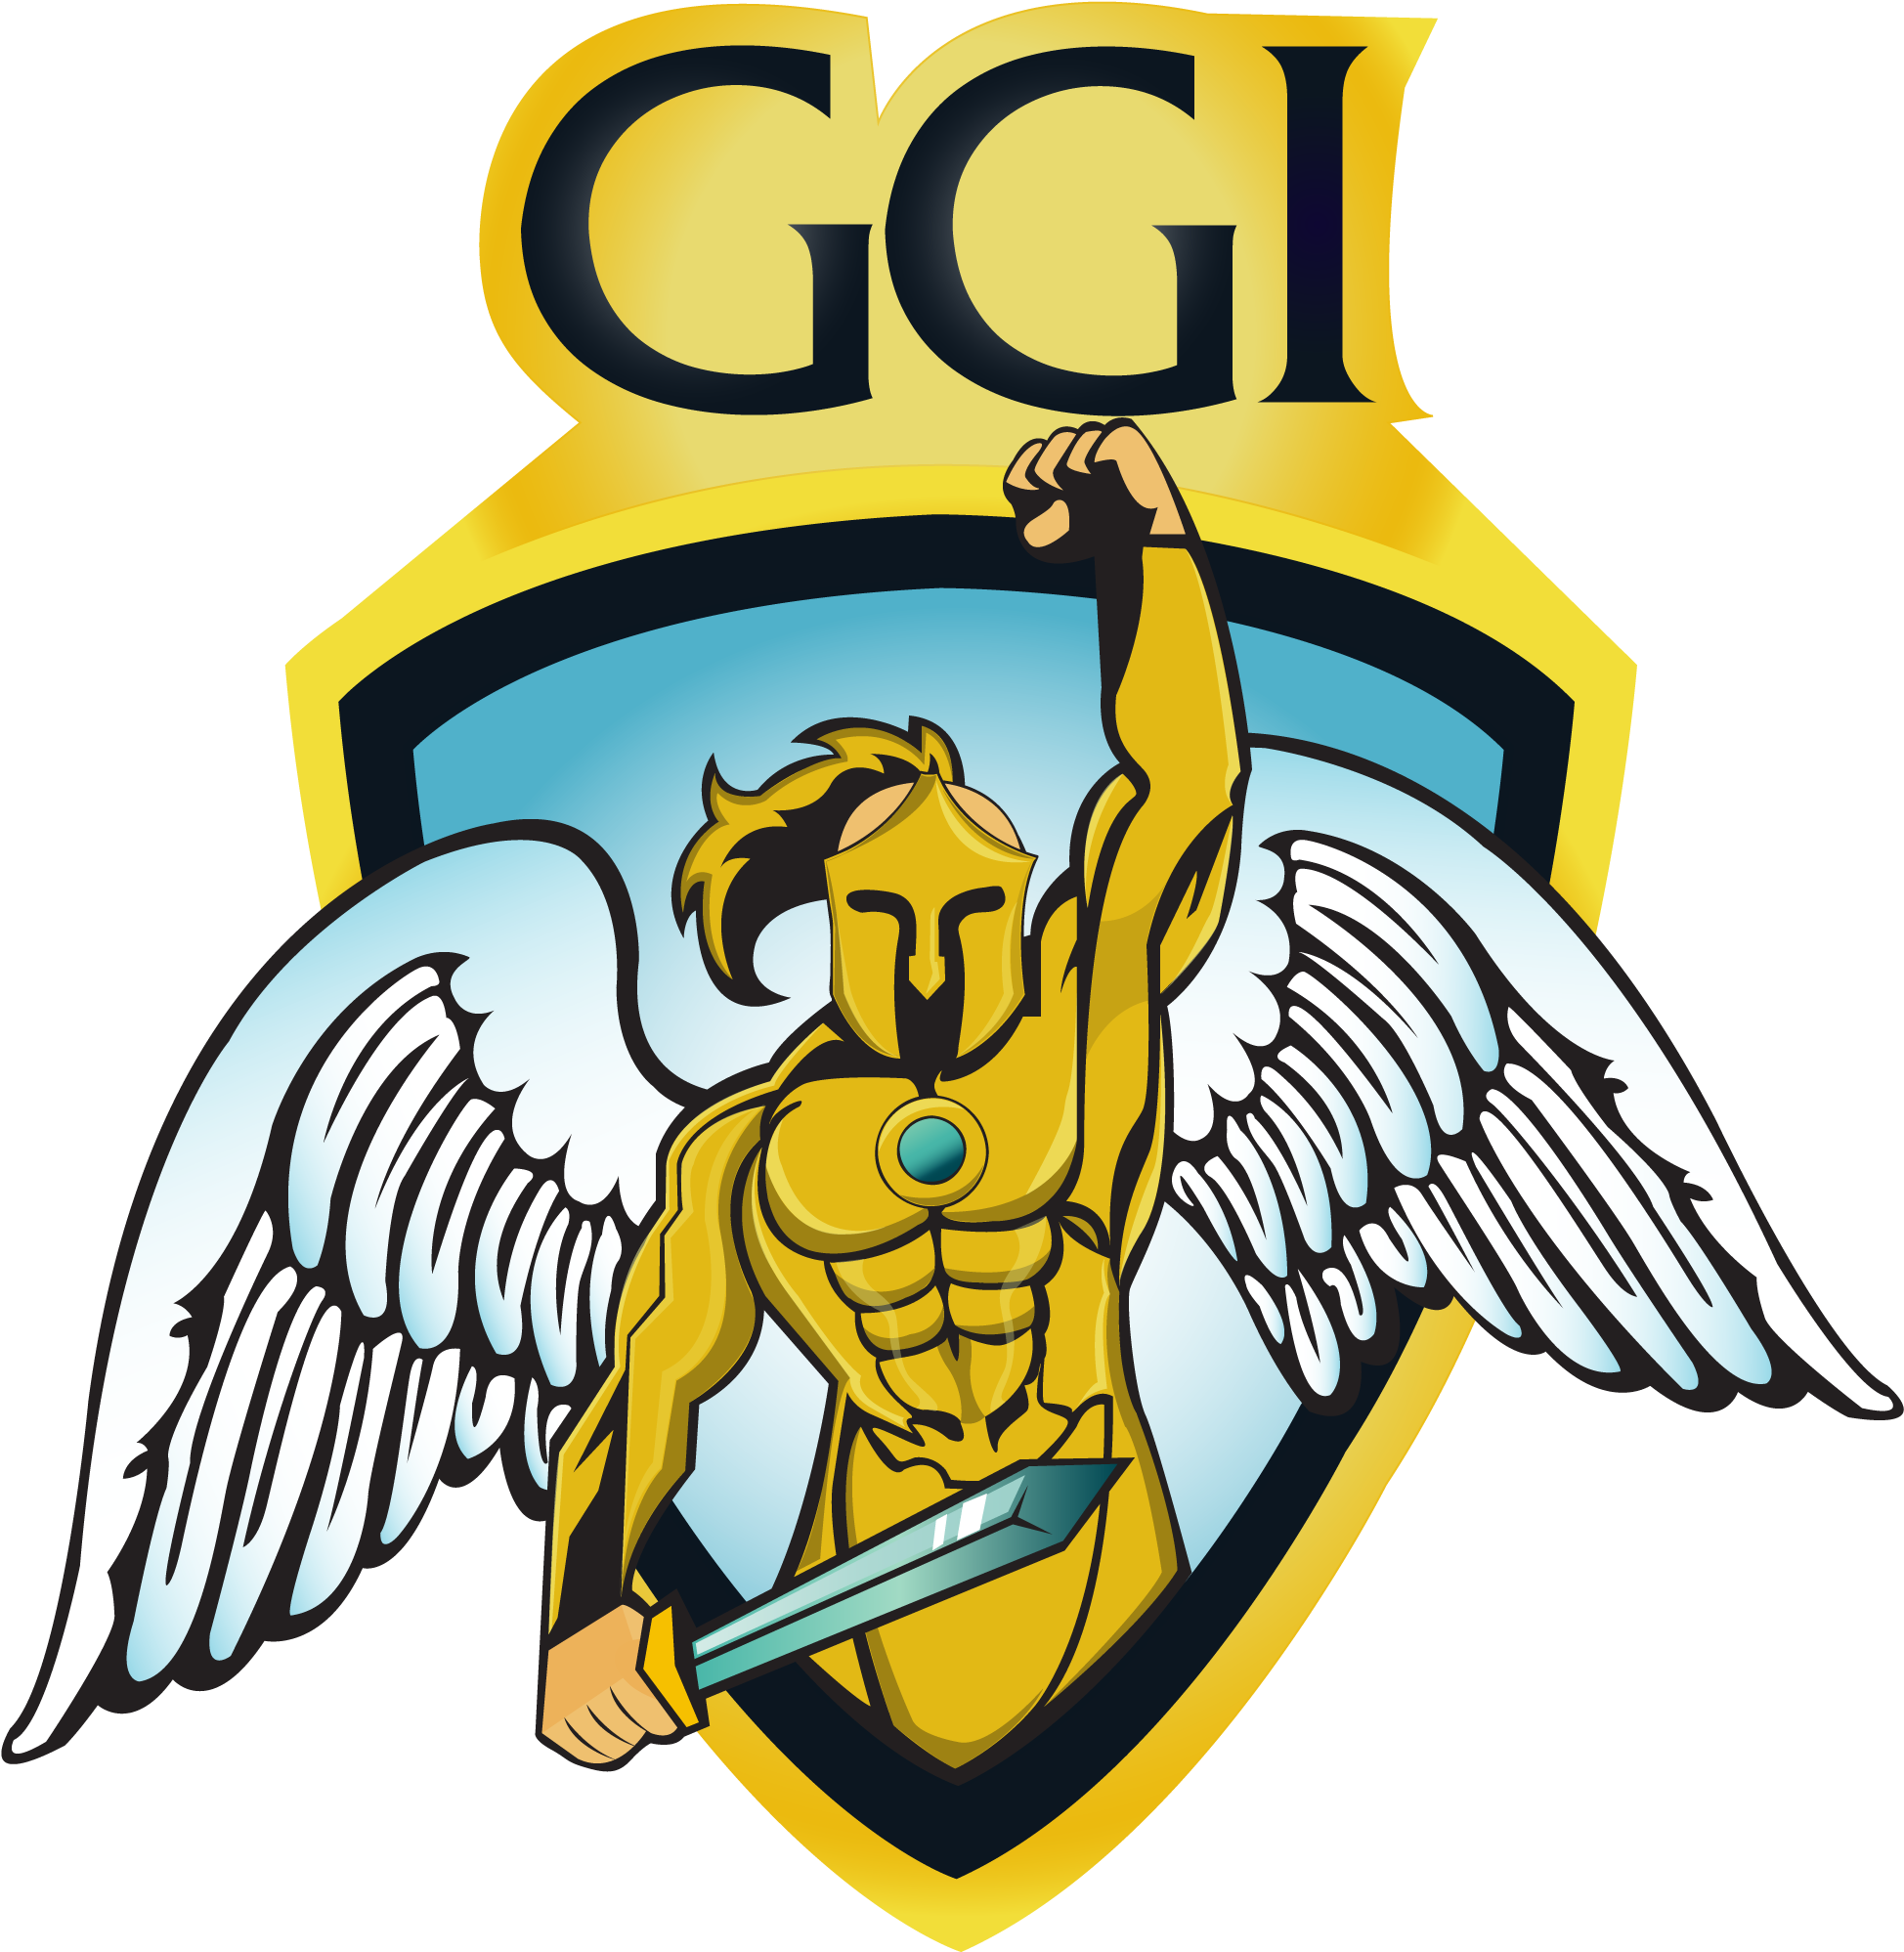 Ggi Lan-a - Ggi Lan-a (2250x2250)